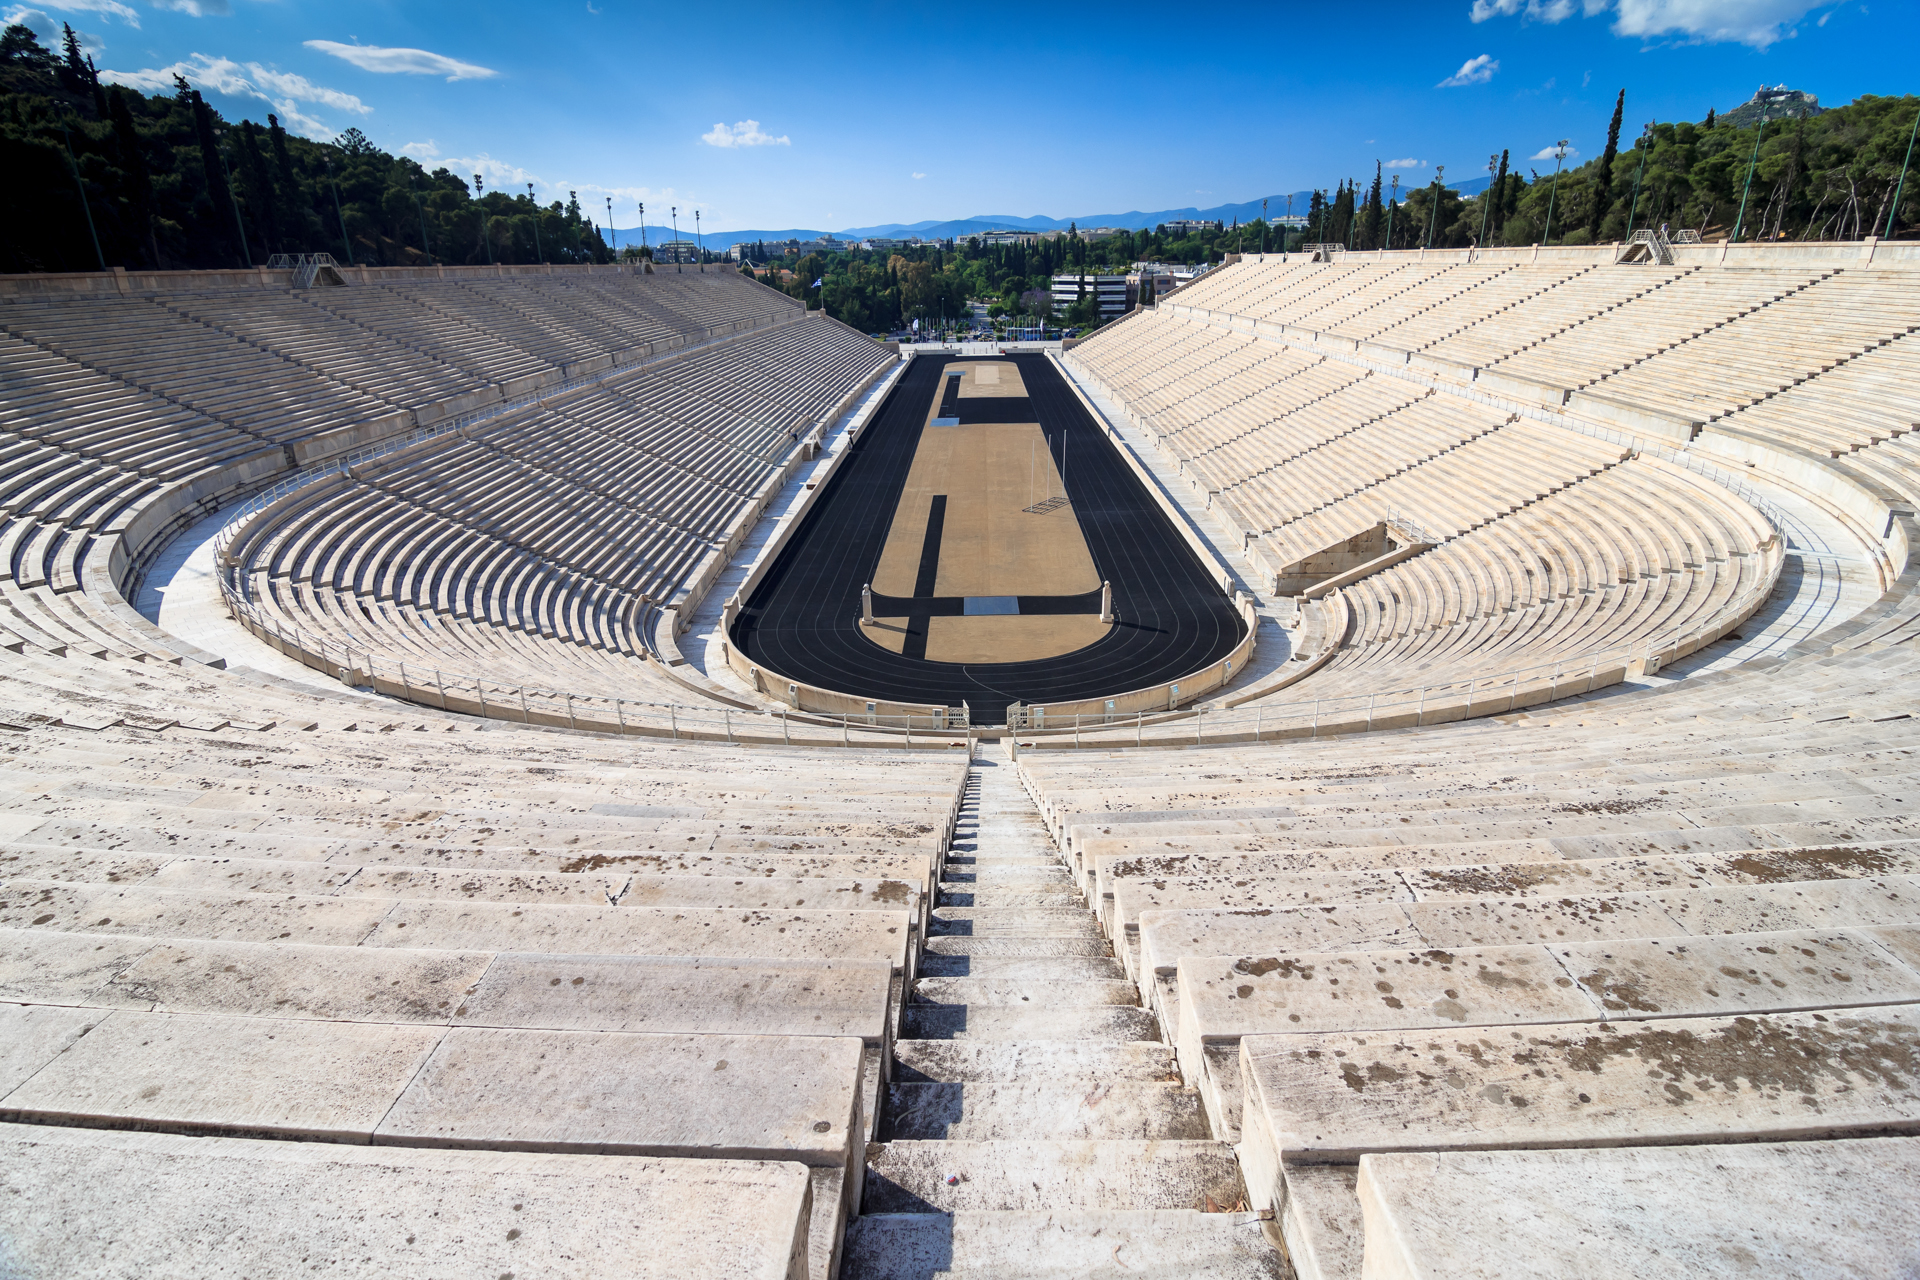 panathenaic stadium in Athens